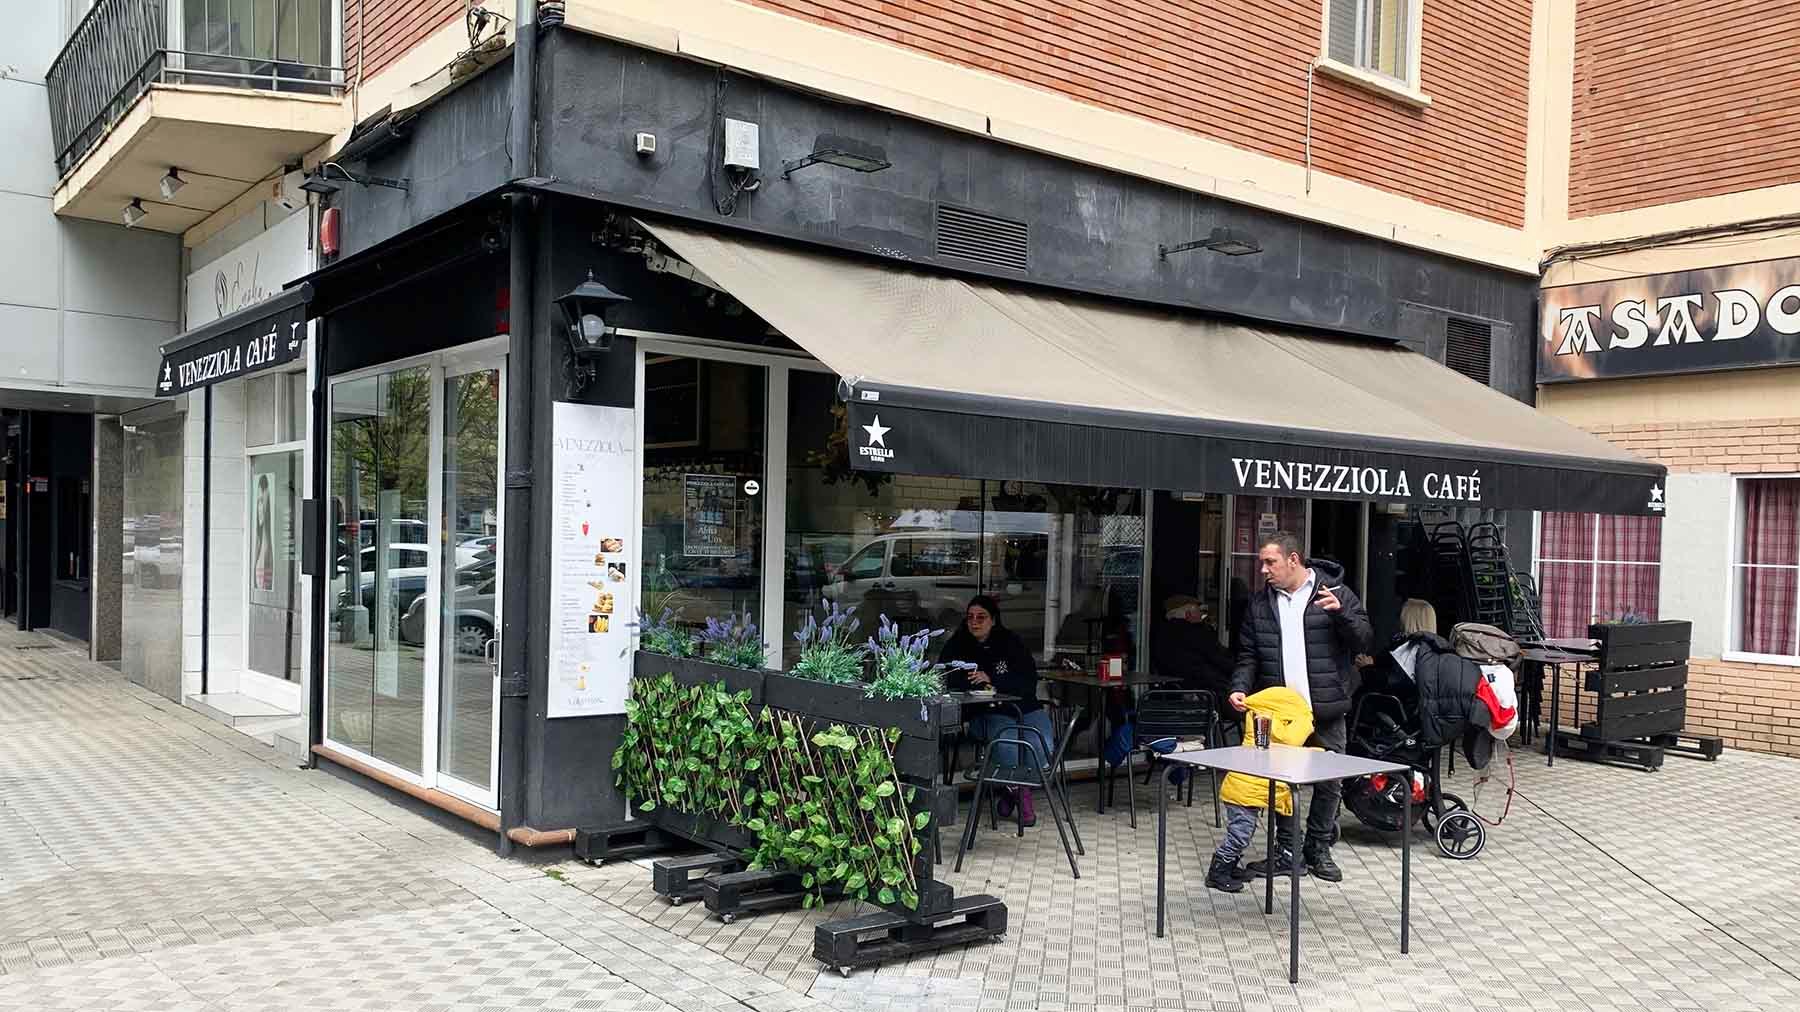 Venezziola Café está en la calle Esquiroz 7 de Pamplona. Navarra.com